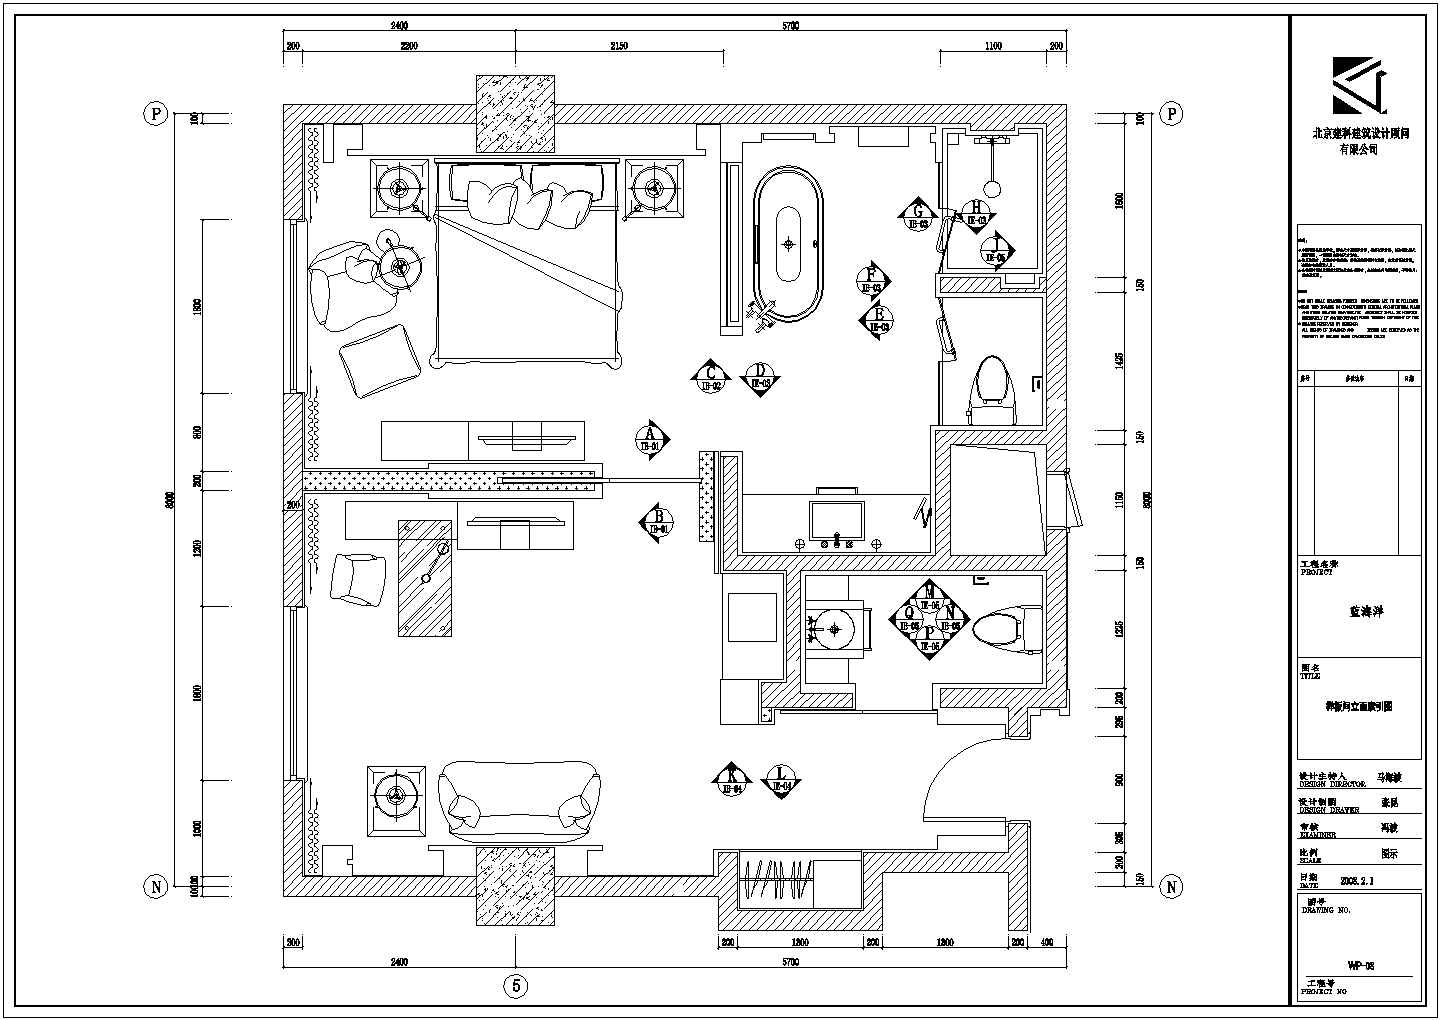 北京小户型二居室正方形户型样板房装饰装修设计cad平面布置方案图(8米乘8米)